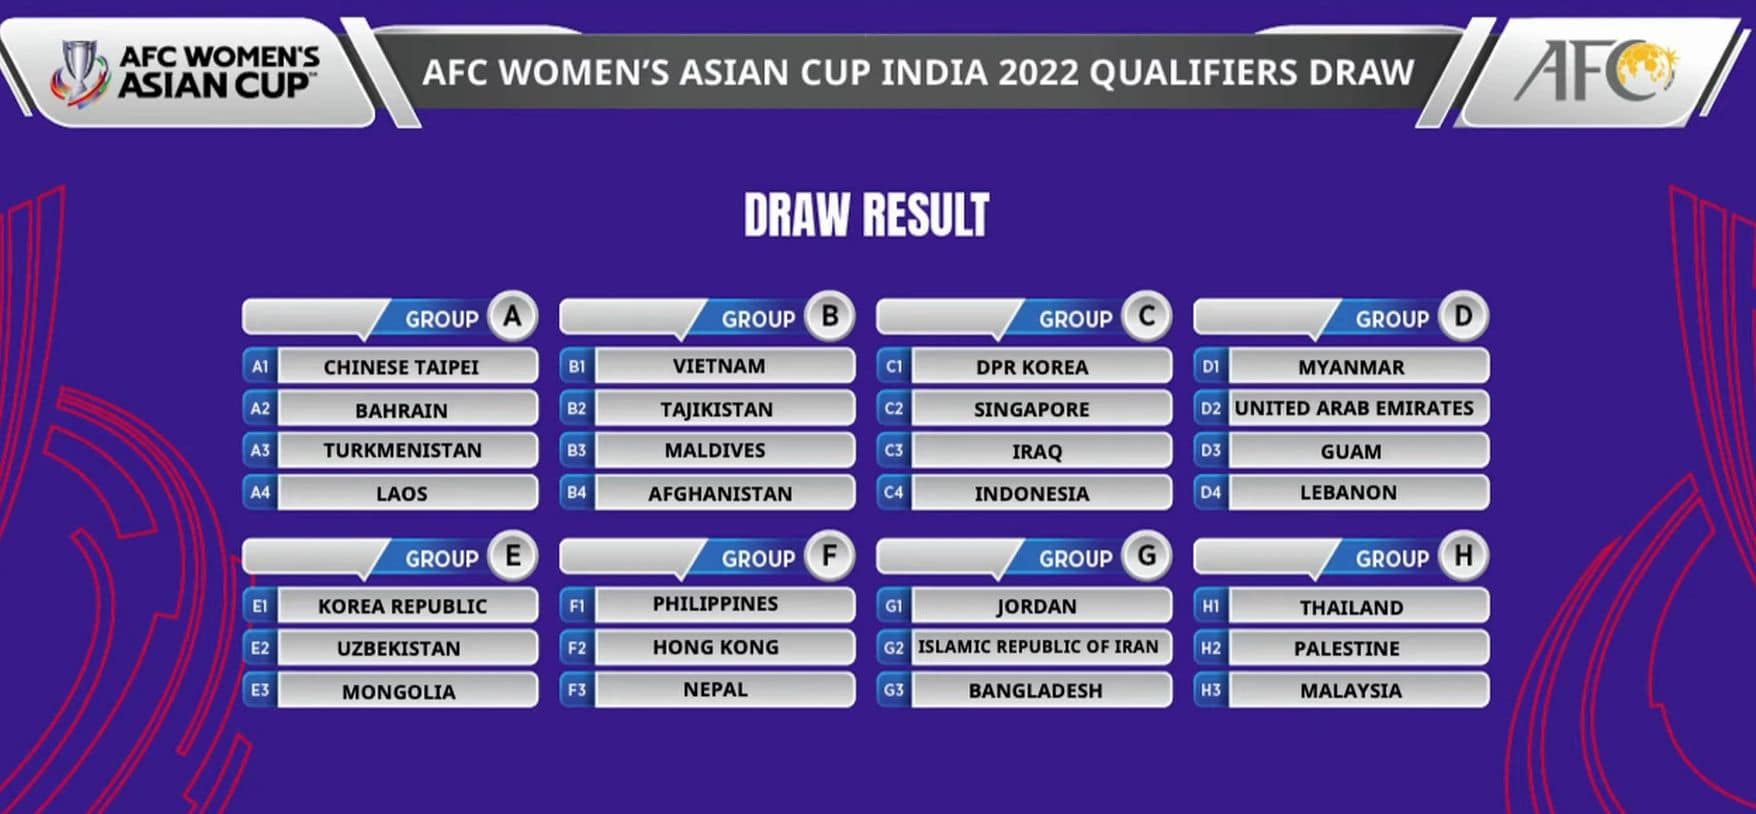 ผลจับกลุ่มบอลหญิง AFC Asian Cup 2022 รอบคัดเลือกออกมาแล้ว ถ้าผลงานไม่ดี